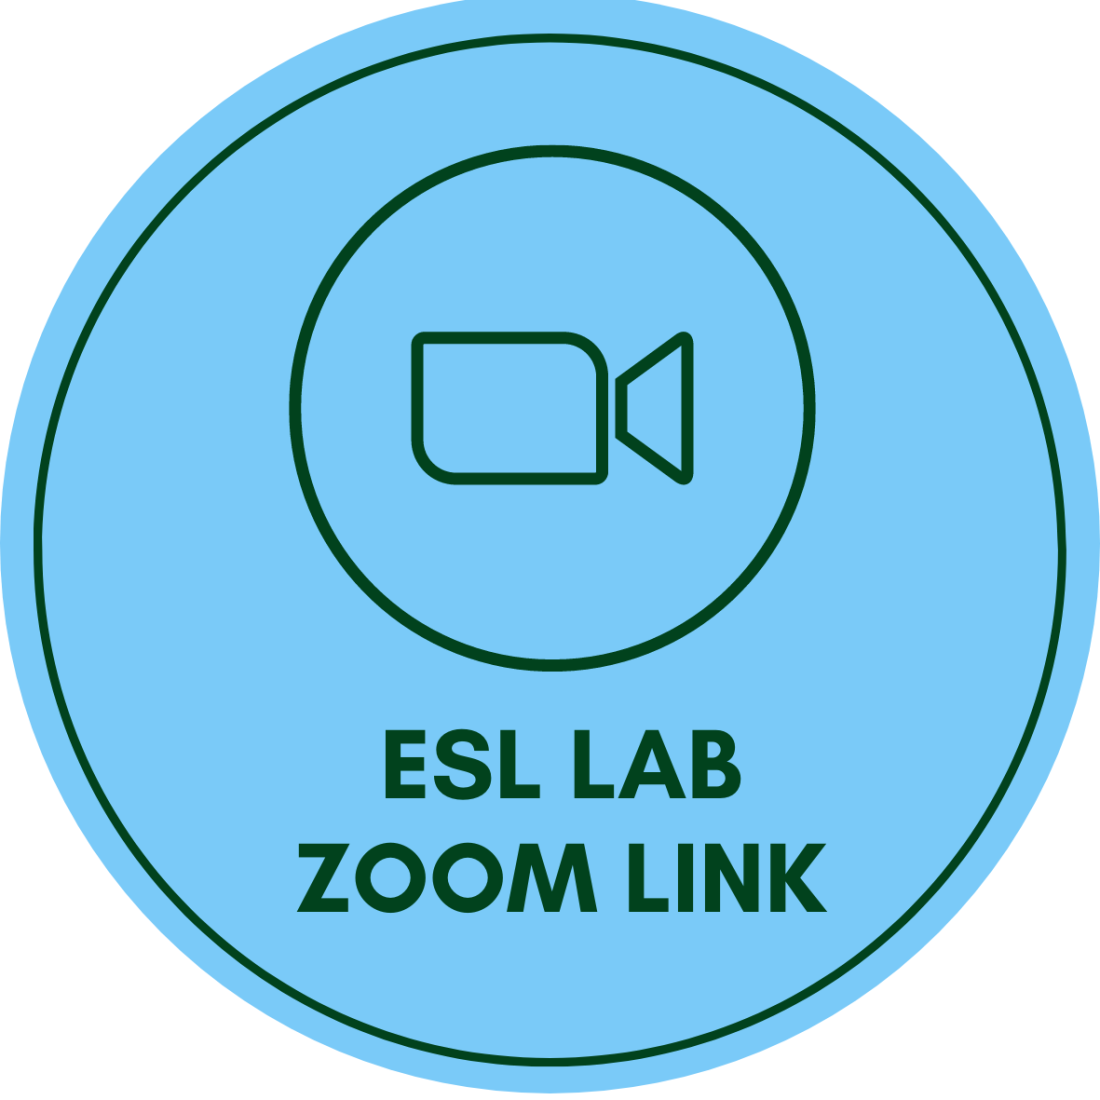 ESL Lab Zoom Link